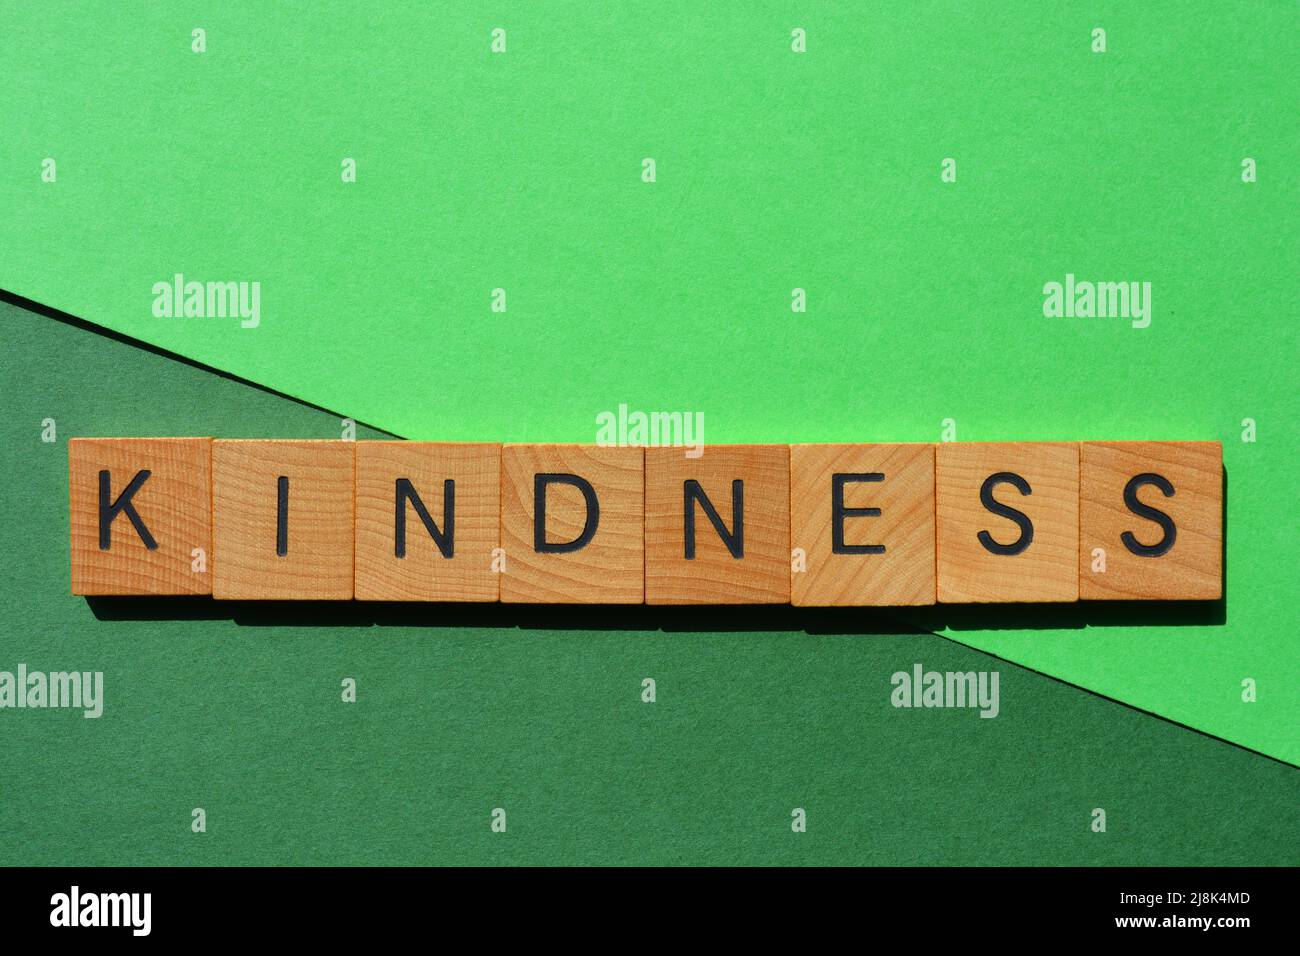 Gentillesse, mot en lettres de l'alphabet en bois isolées sur fond vert Banque D'Images